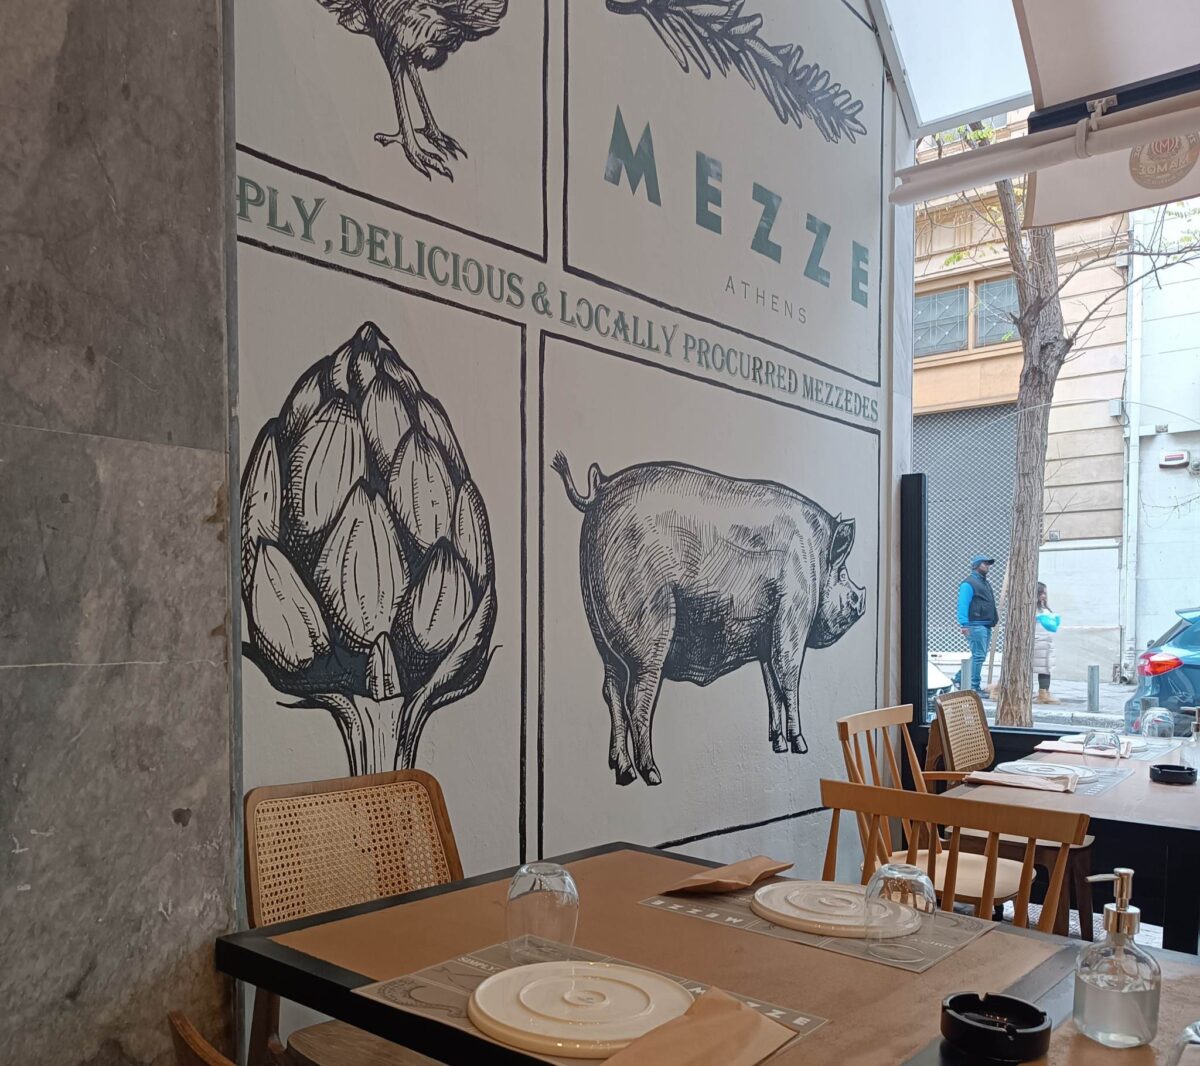 Όμιλος Καστελόριζο: Άνοιξε 15ο κατάστημα – Το Μezze Athens στο κέντρο της Αθήνας